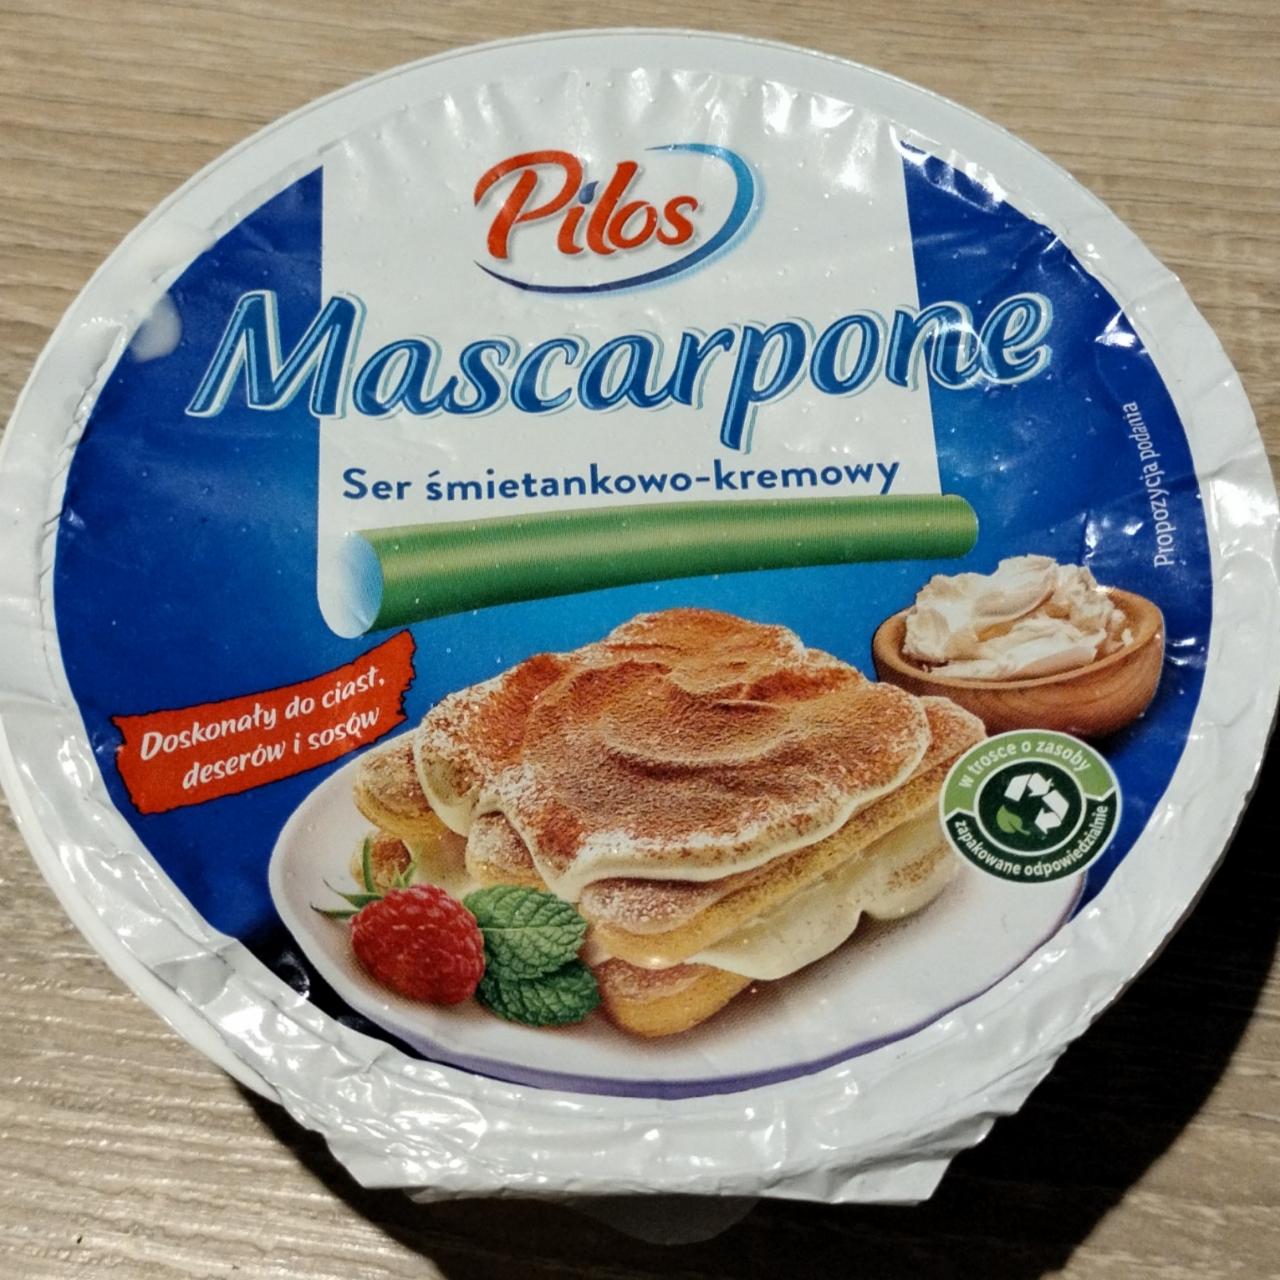 Zdjęcia - Mascarpone ser śmietankowo-kremowy Pilos